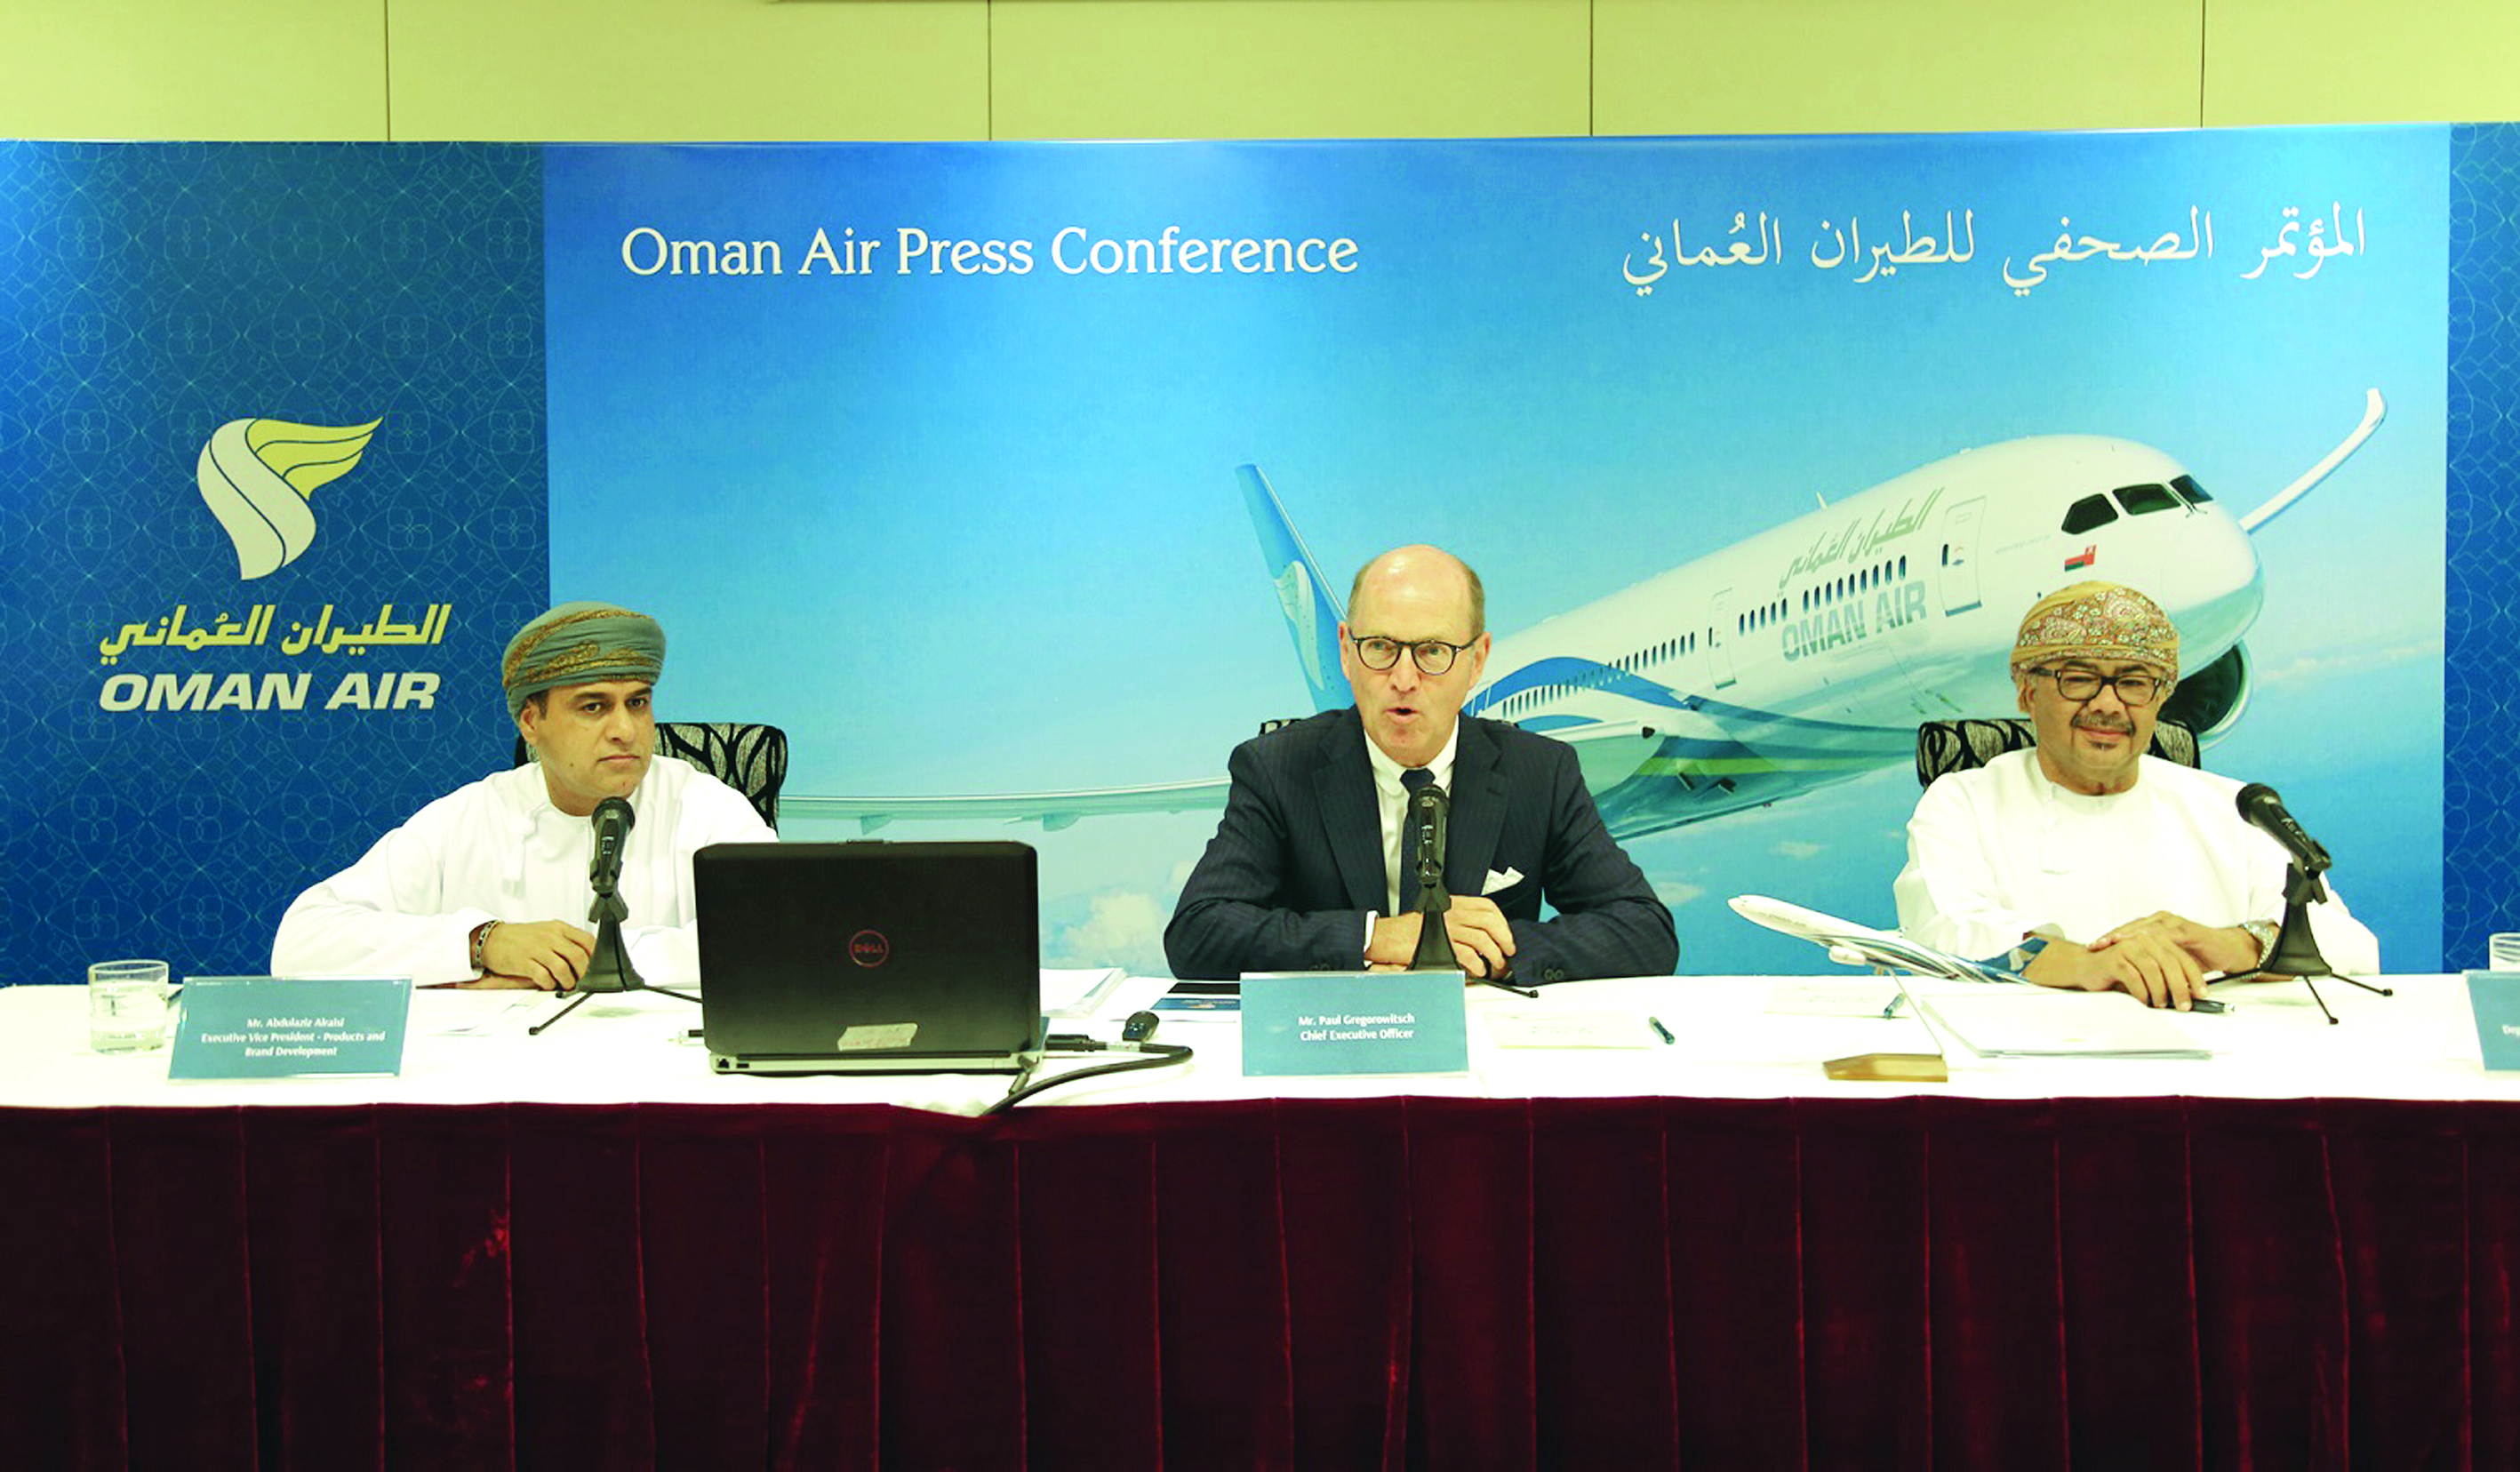 الرئيس التنفيذي للطيران العماني يعبر عن قلقه إزاء البنية الاساسية الحالية بمطار مسقط الدولي